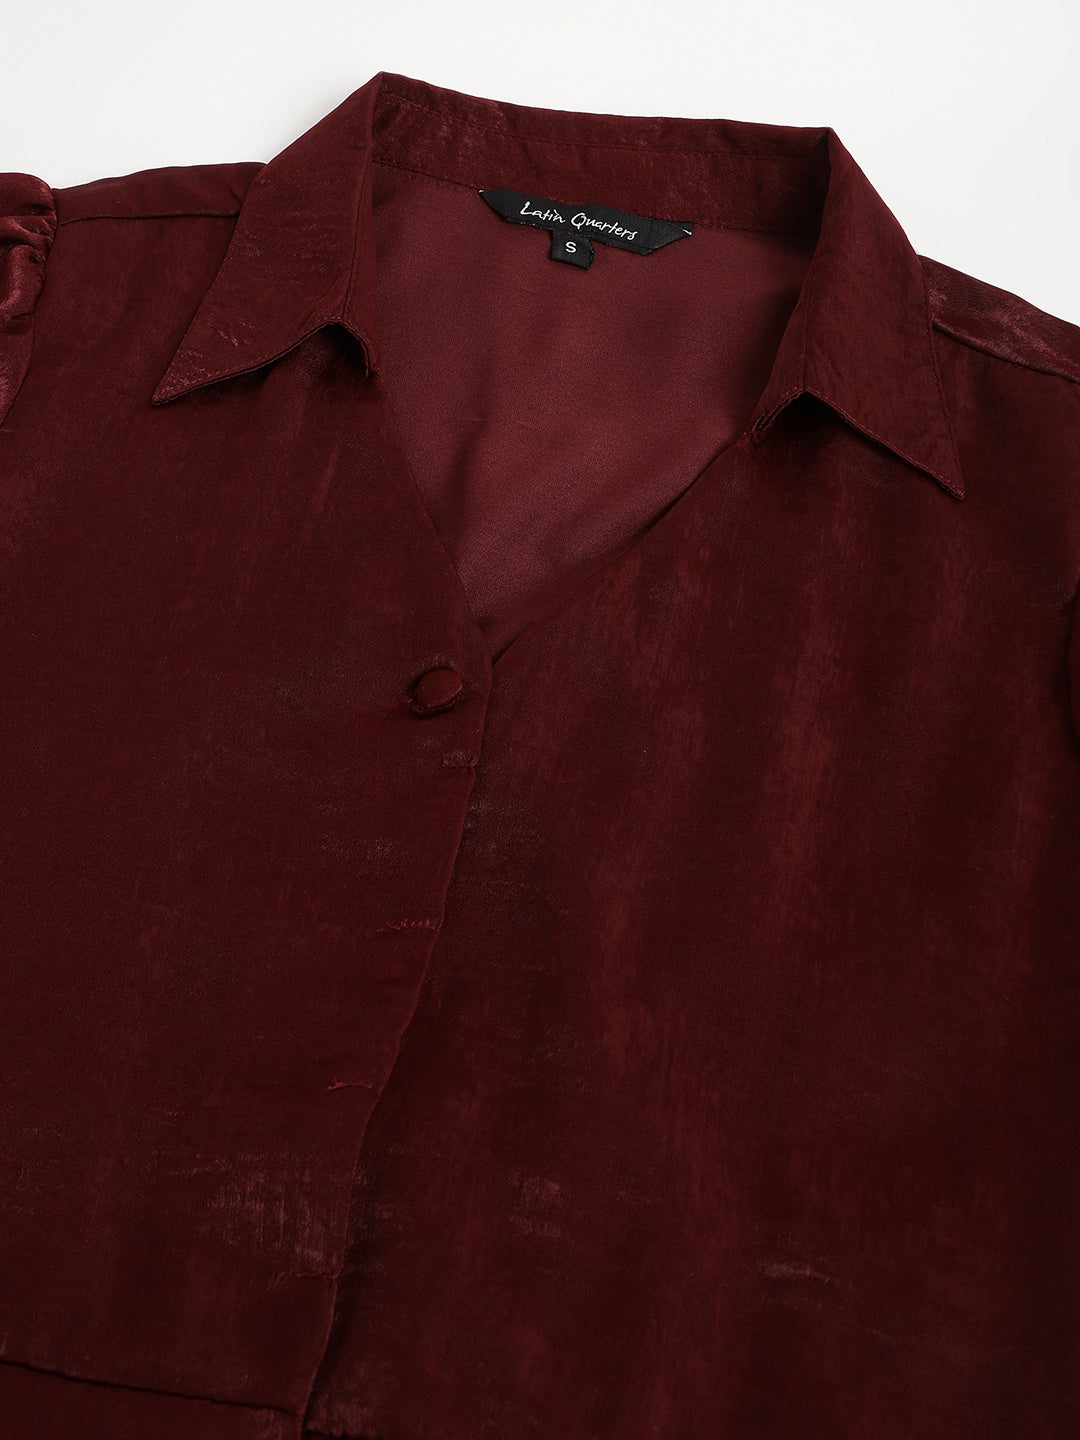 Maroon Half Sleeve Collar Neck Solid Shirt Dress